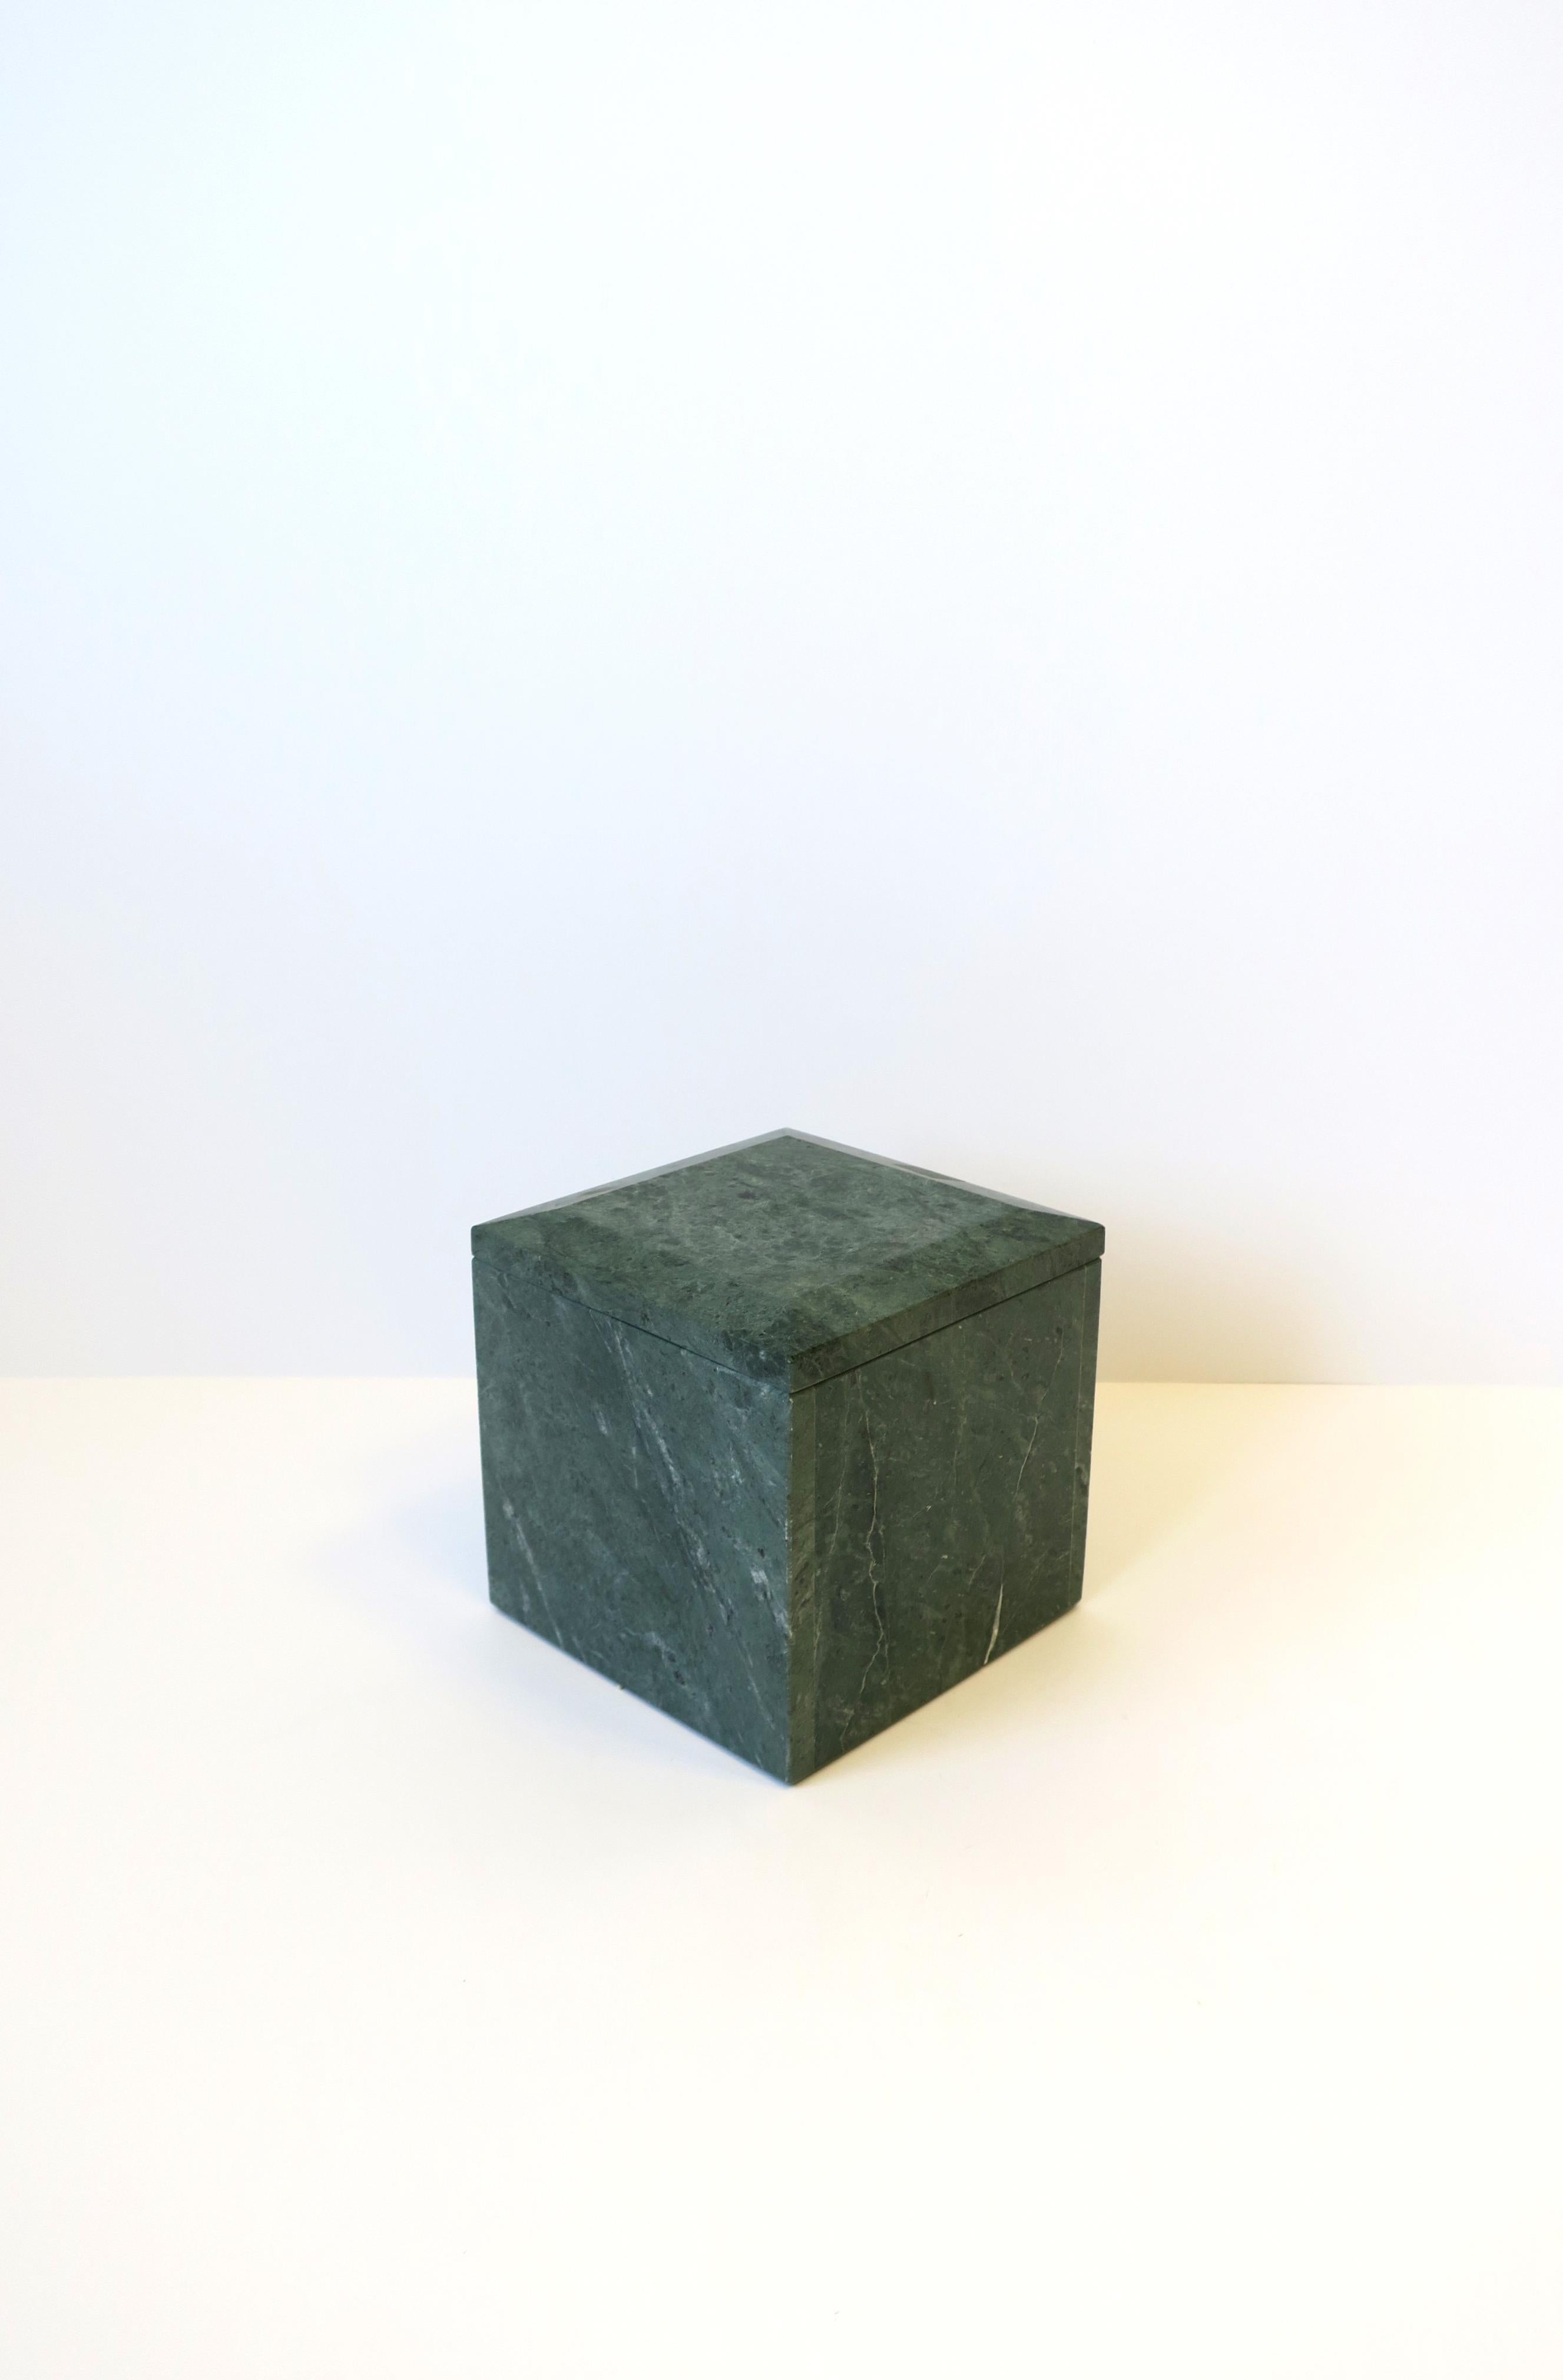 Eine schöne und umfangreiche italienische moderne postmoderne quadratische Box aus grünem Verde-Marmor, ca. 1970er Jahre, Italien. Der Marmor hat überwiegend mittel- und dunkelgrüne Farbtöne mit weißen Äderungen. Die Oberseite hat eine abgeschrägte